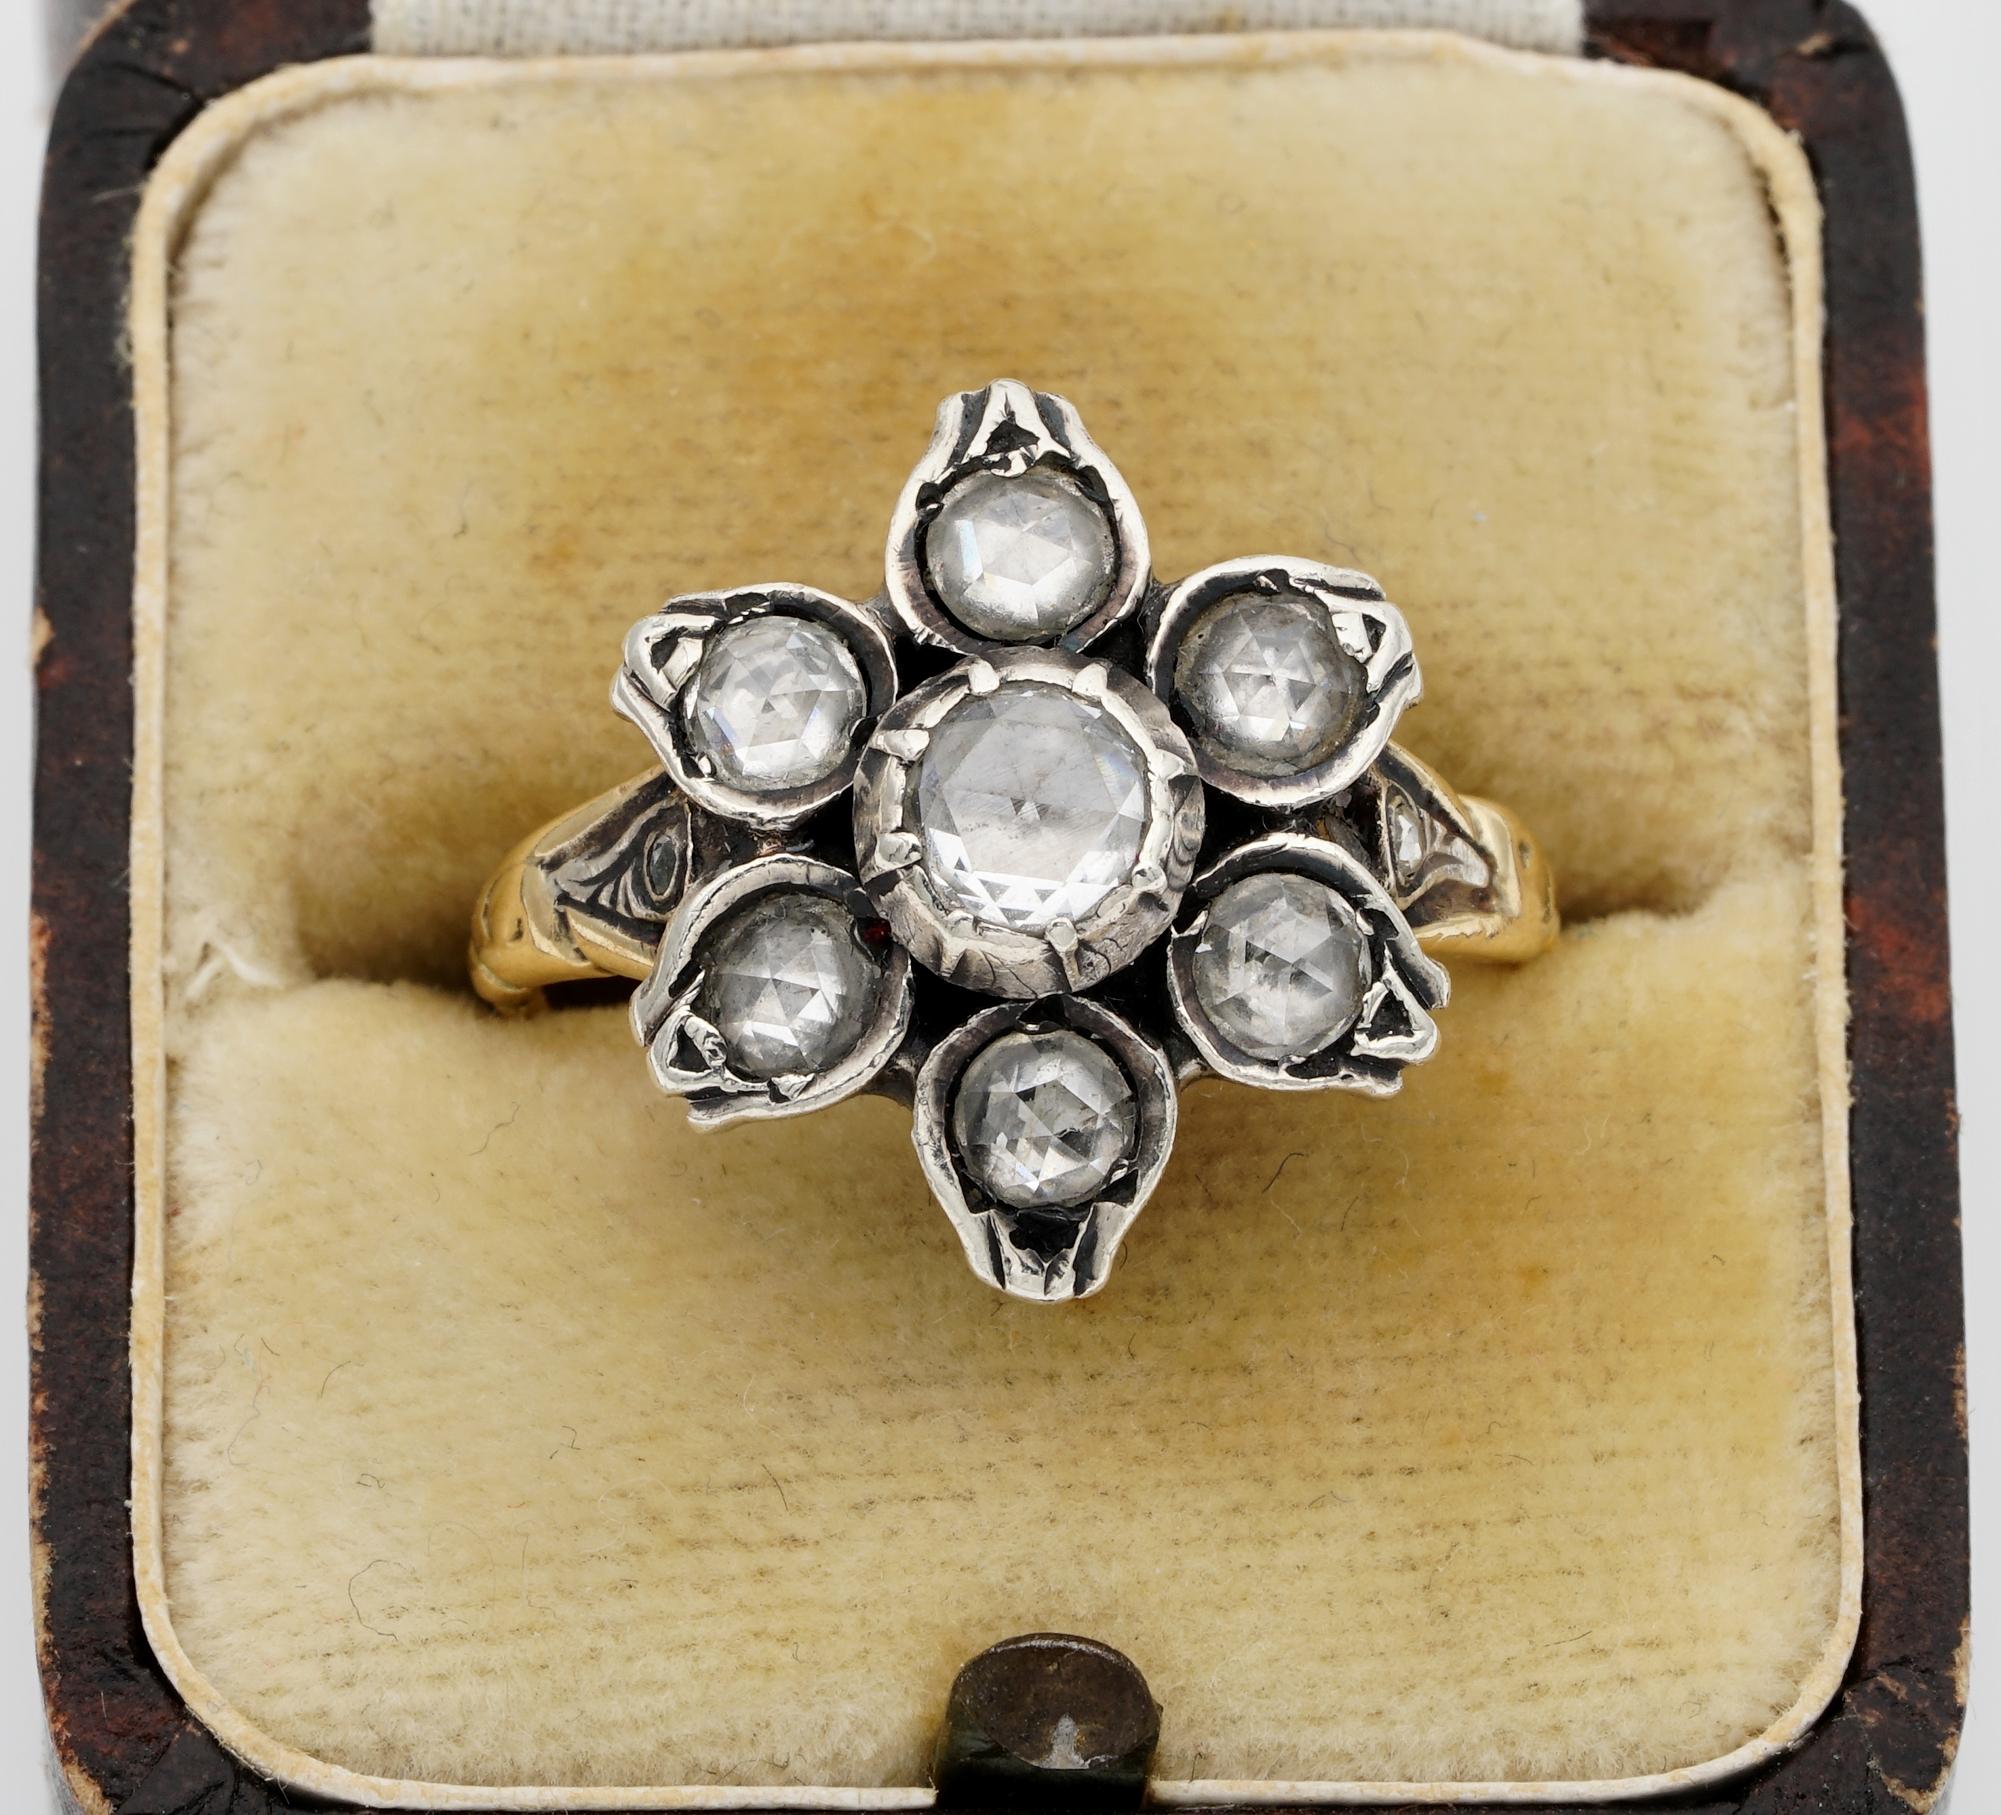 Cette magnifique bague en diamant de style géorgien de l'époque victorienne date de 1900 environ.
Fabriqué à la main en or massif 18 carats avec des portions d'argent.
Modélisée comme une douce fleur, magnifiquement détaillée et ornée de diamants